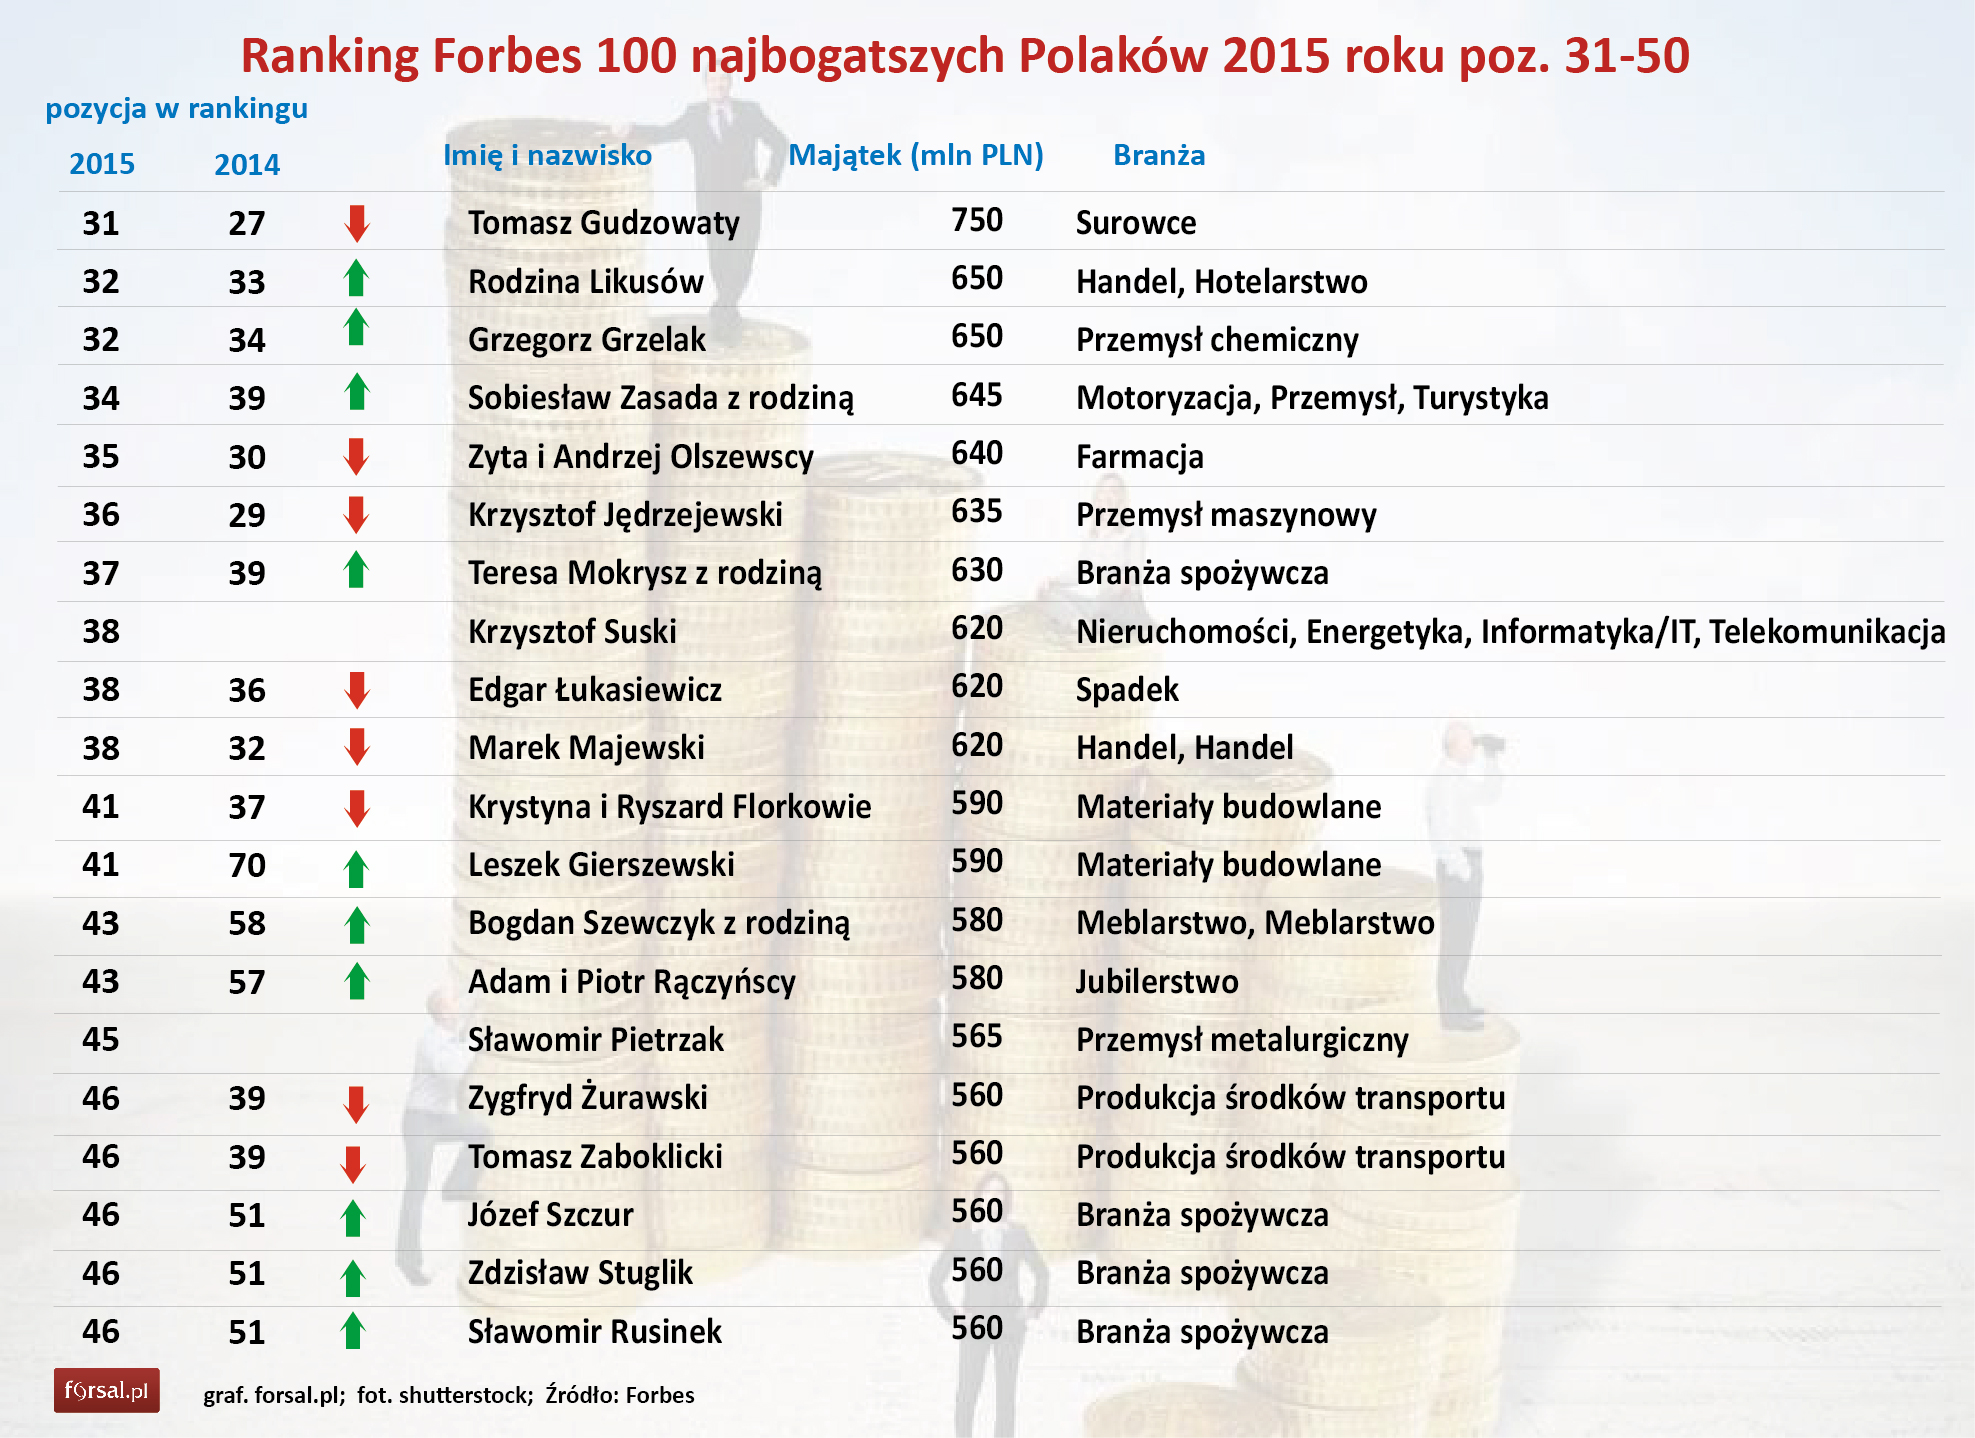 Ranking "Forbesa": 100 najbogatszych Polaków w 2015 roku - Forsal.pl